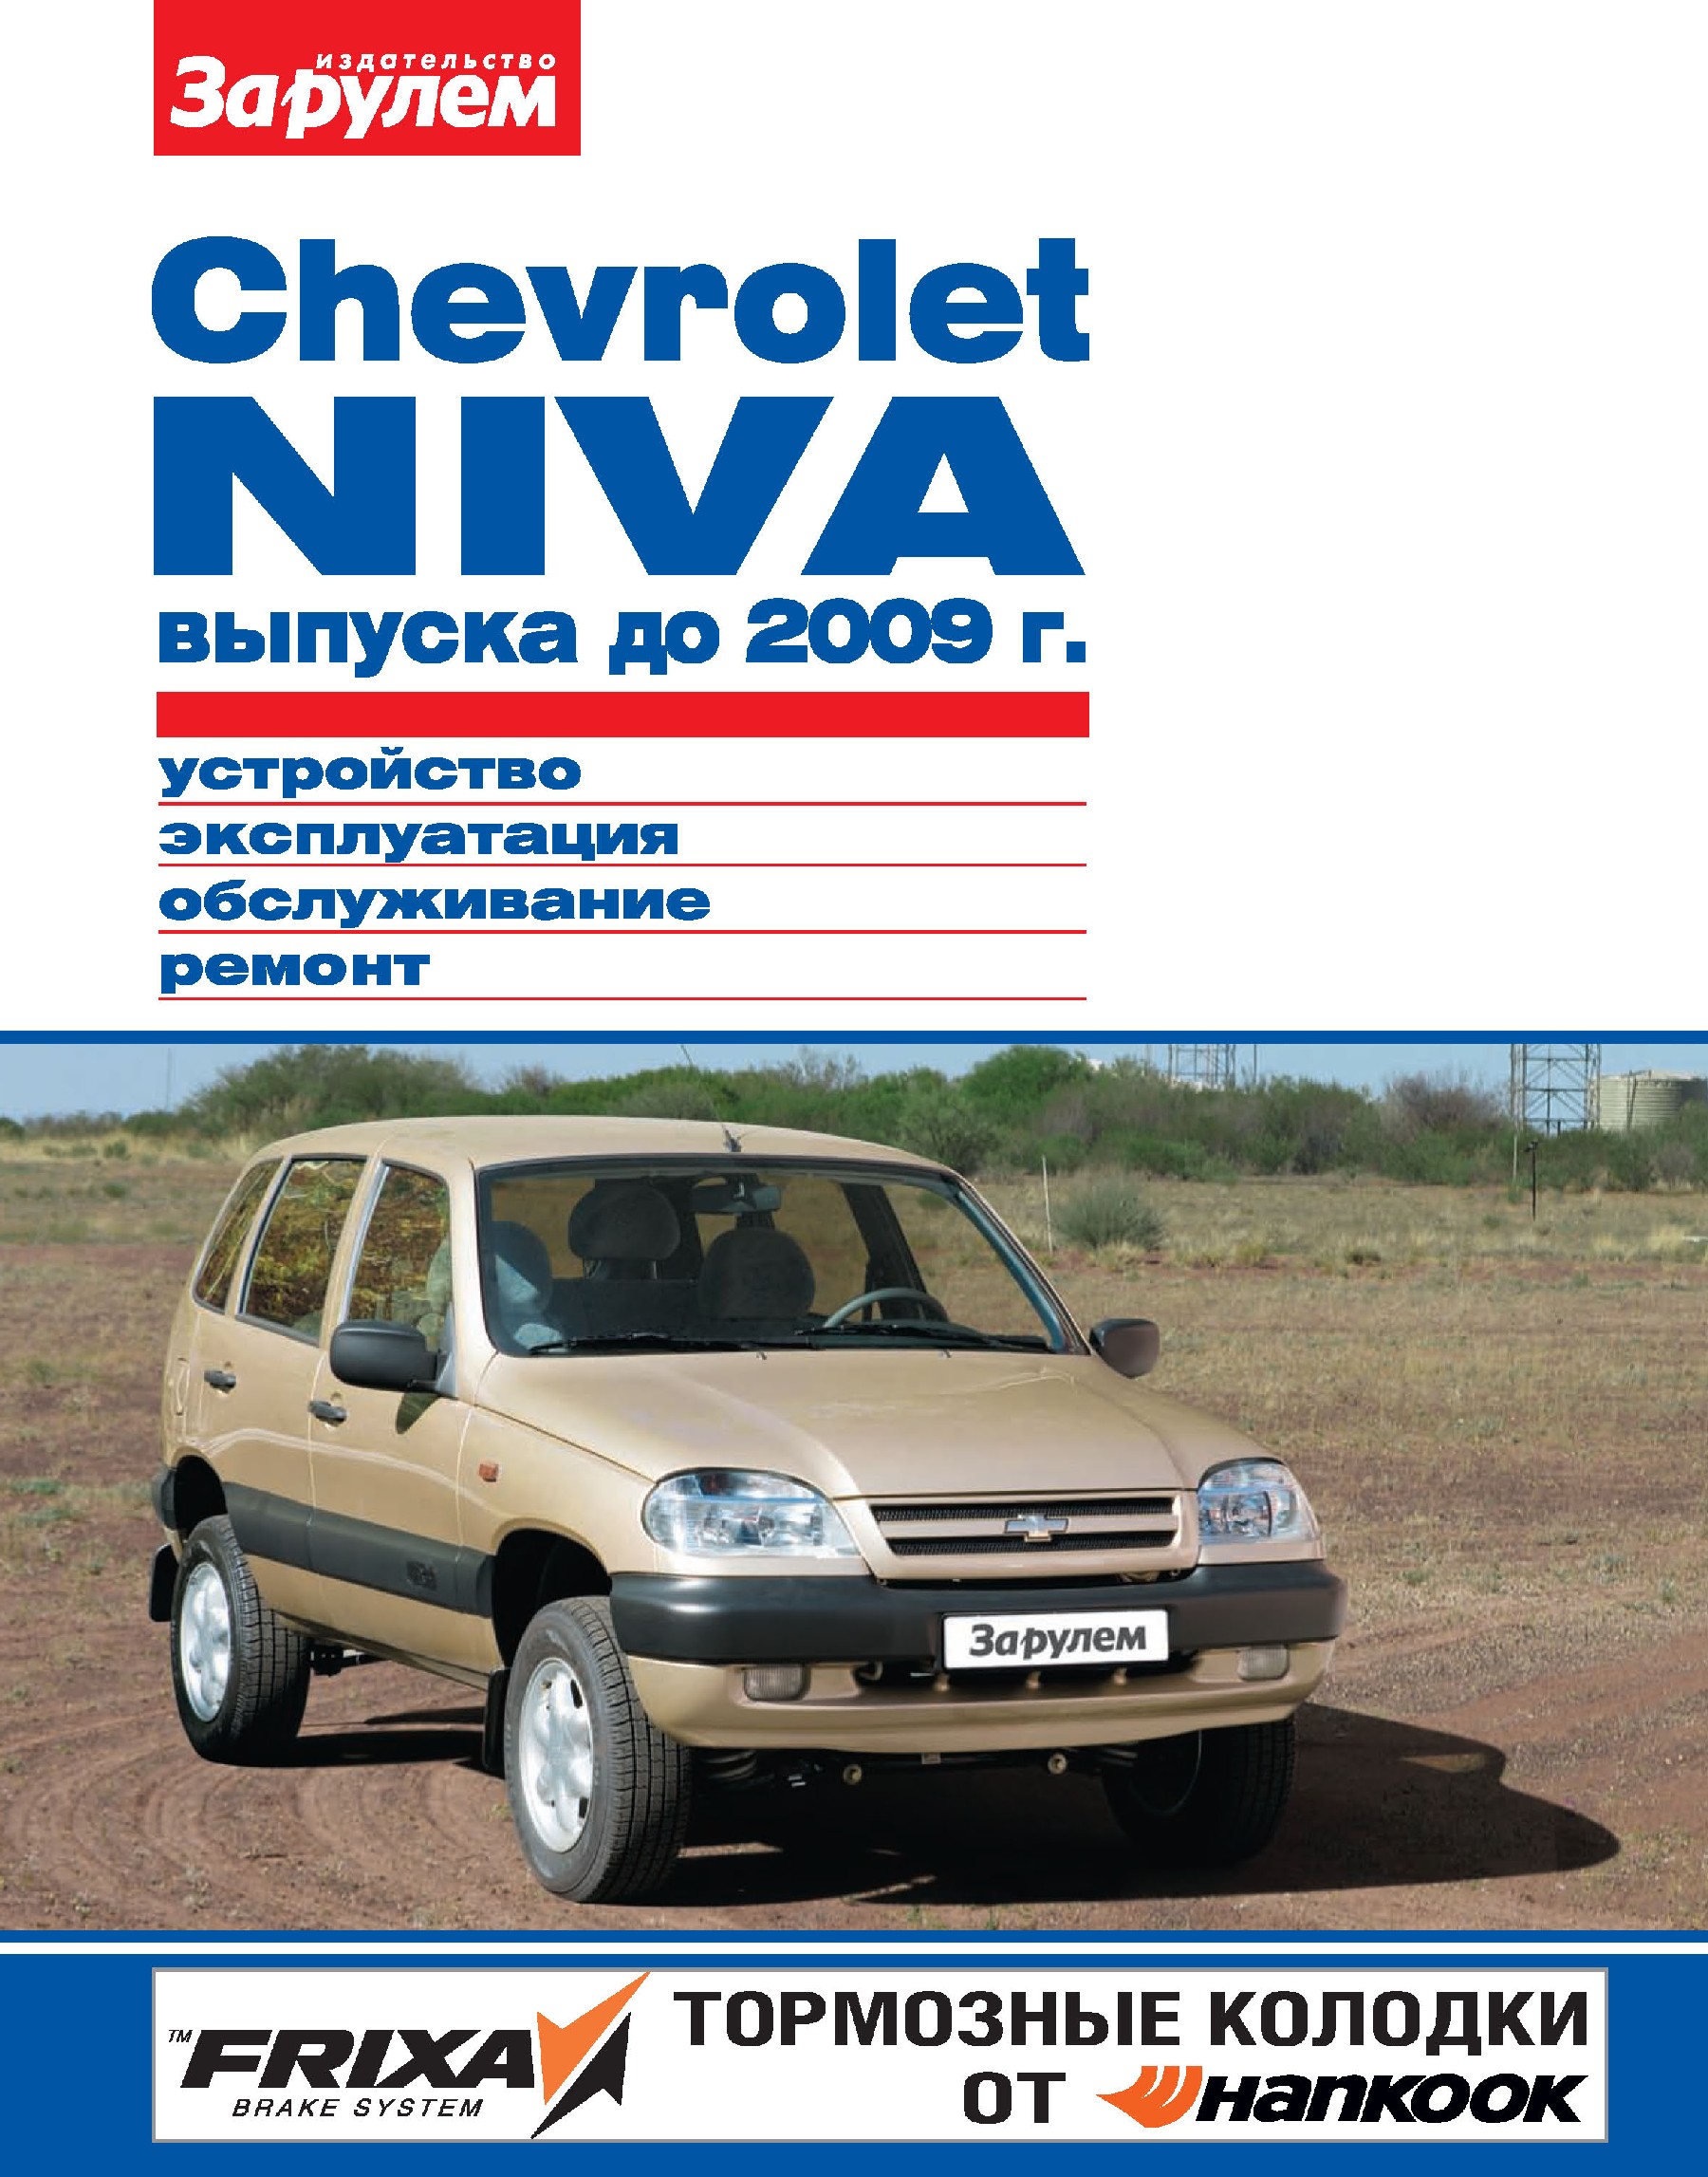 Chevrolet Nivaвыпуска до 2009 г. Устройство, эксплуатация, обслуживание, ремонт. Иллюстрированное руководство